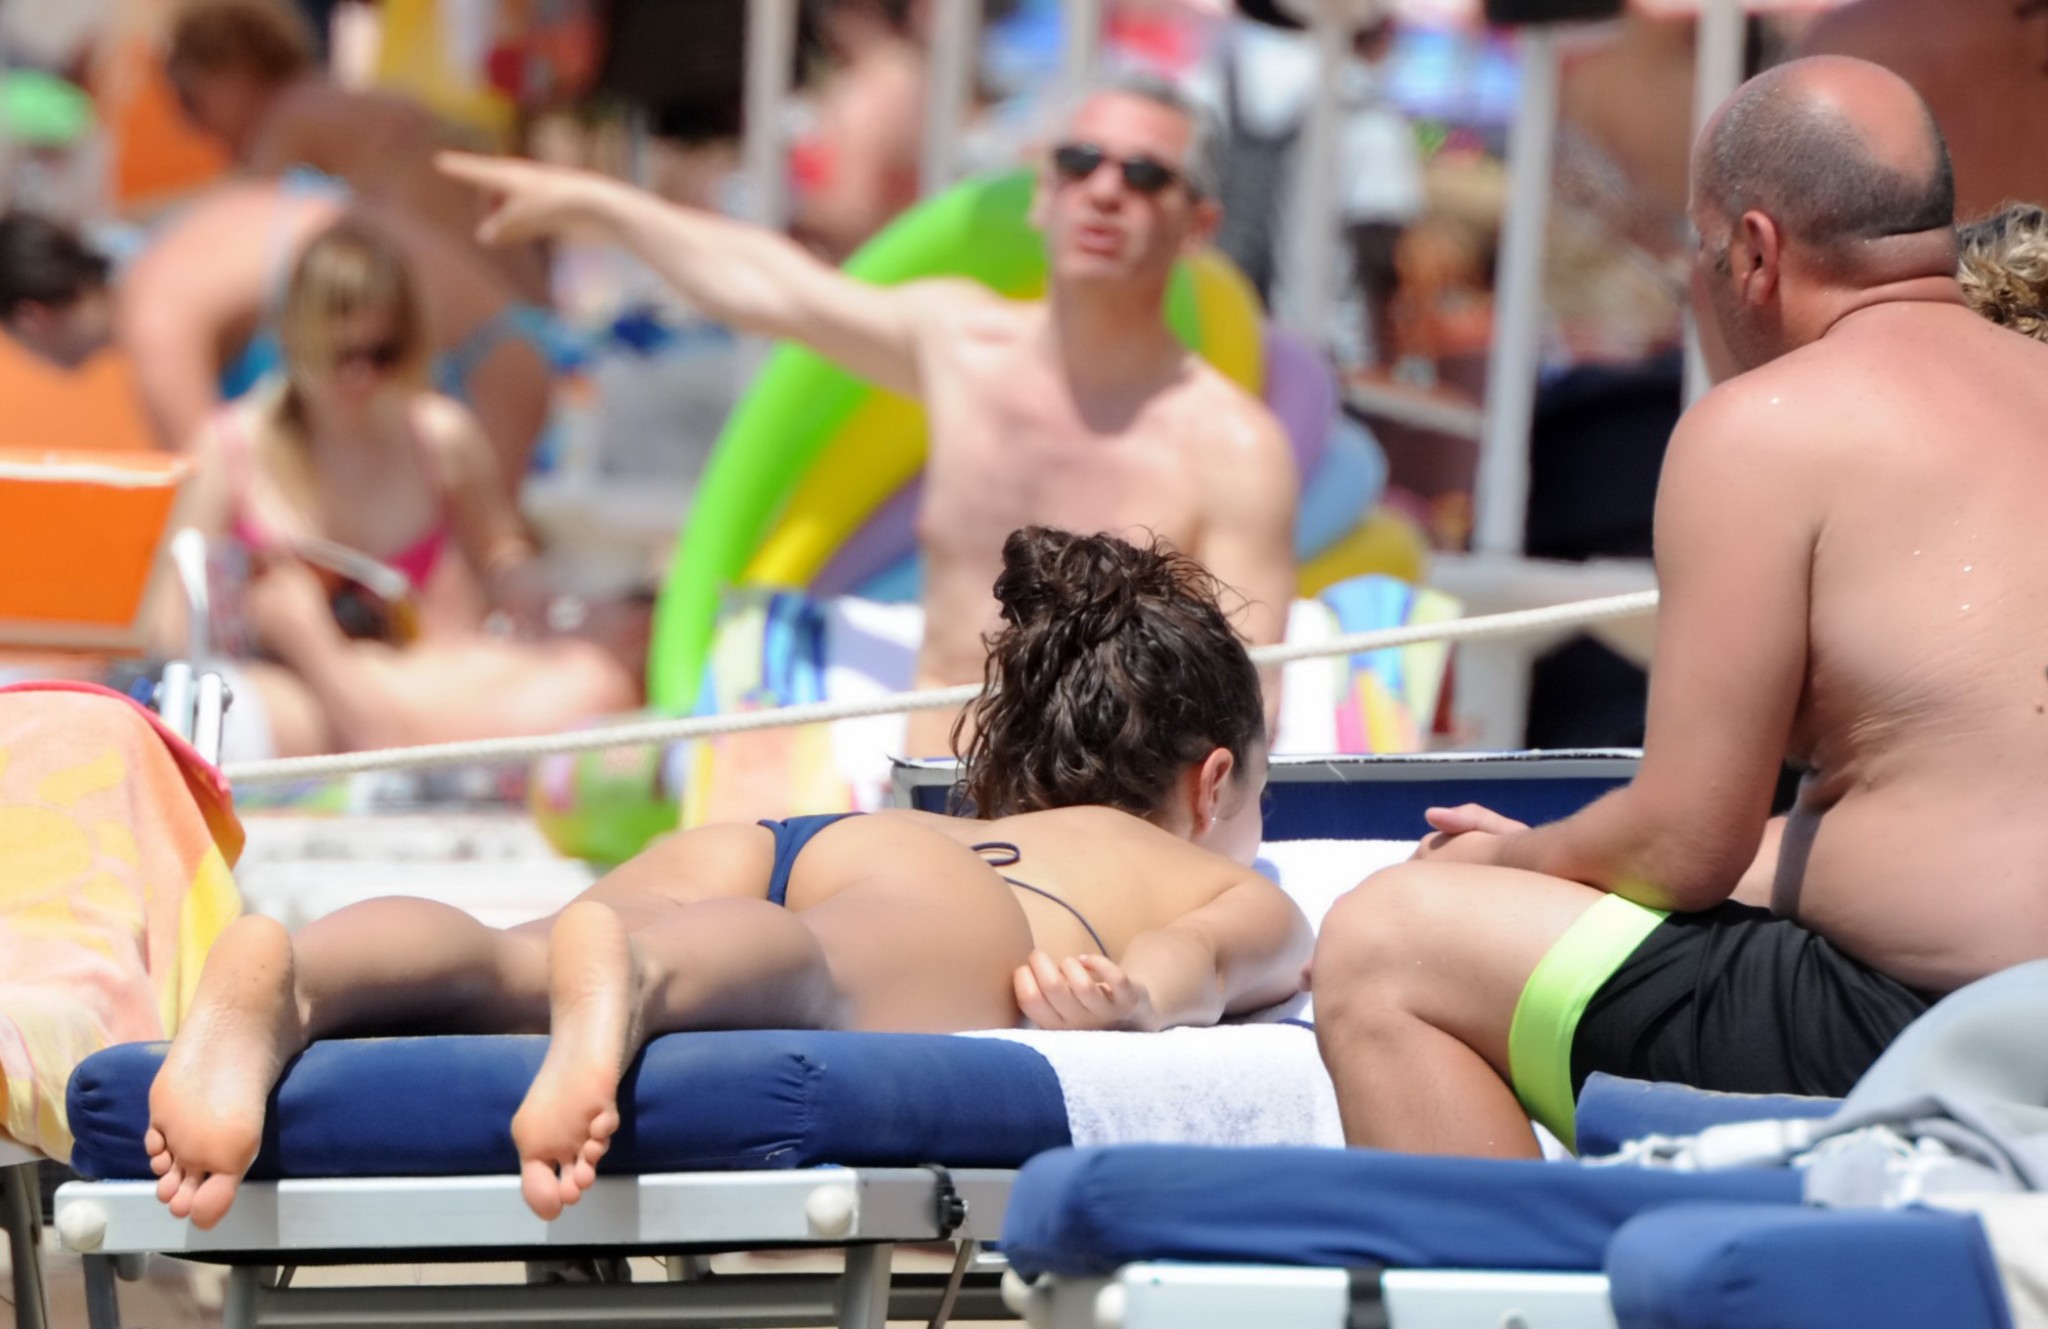 Laura barriales zeigt ihren knackigen Hintern in einem winzigen blauen String-Bikini am Strand
 #75193952